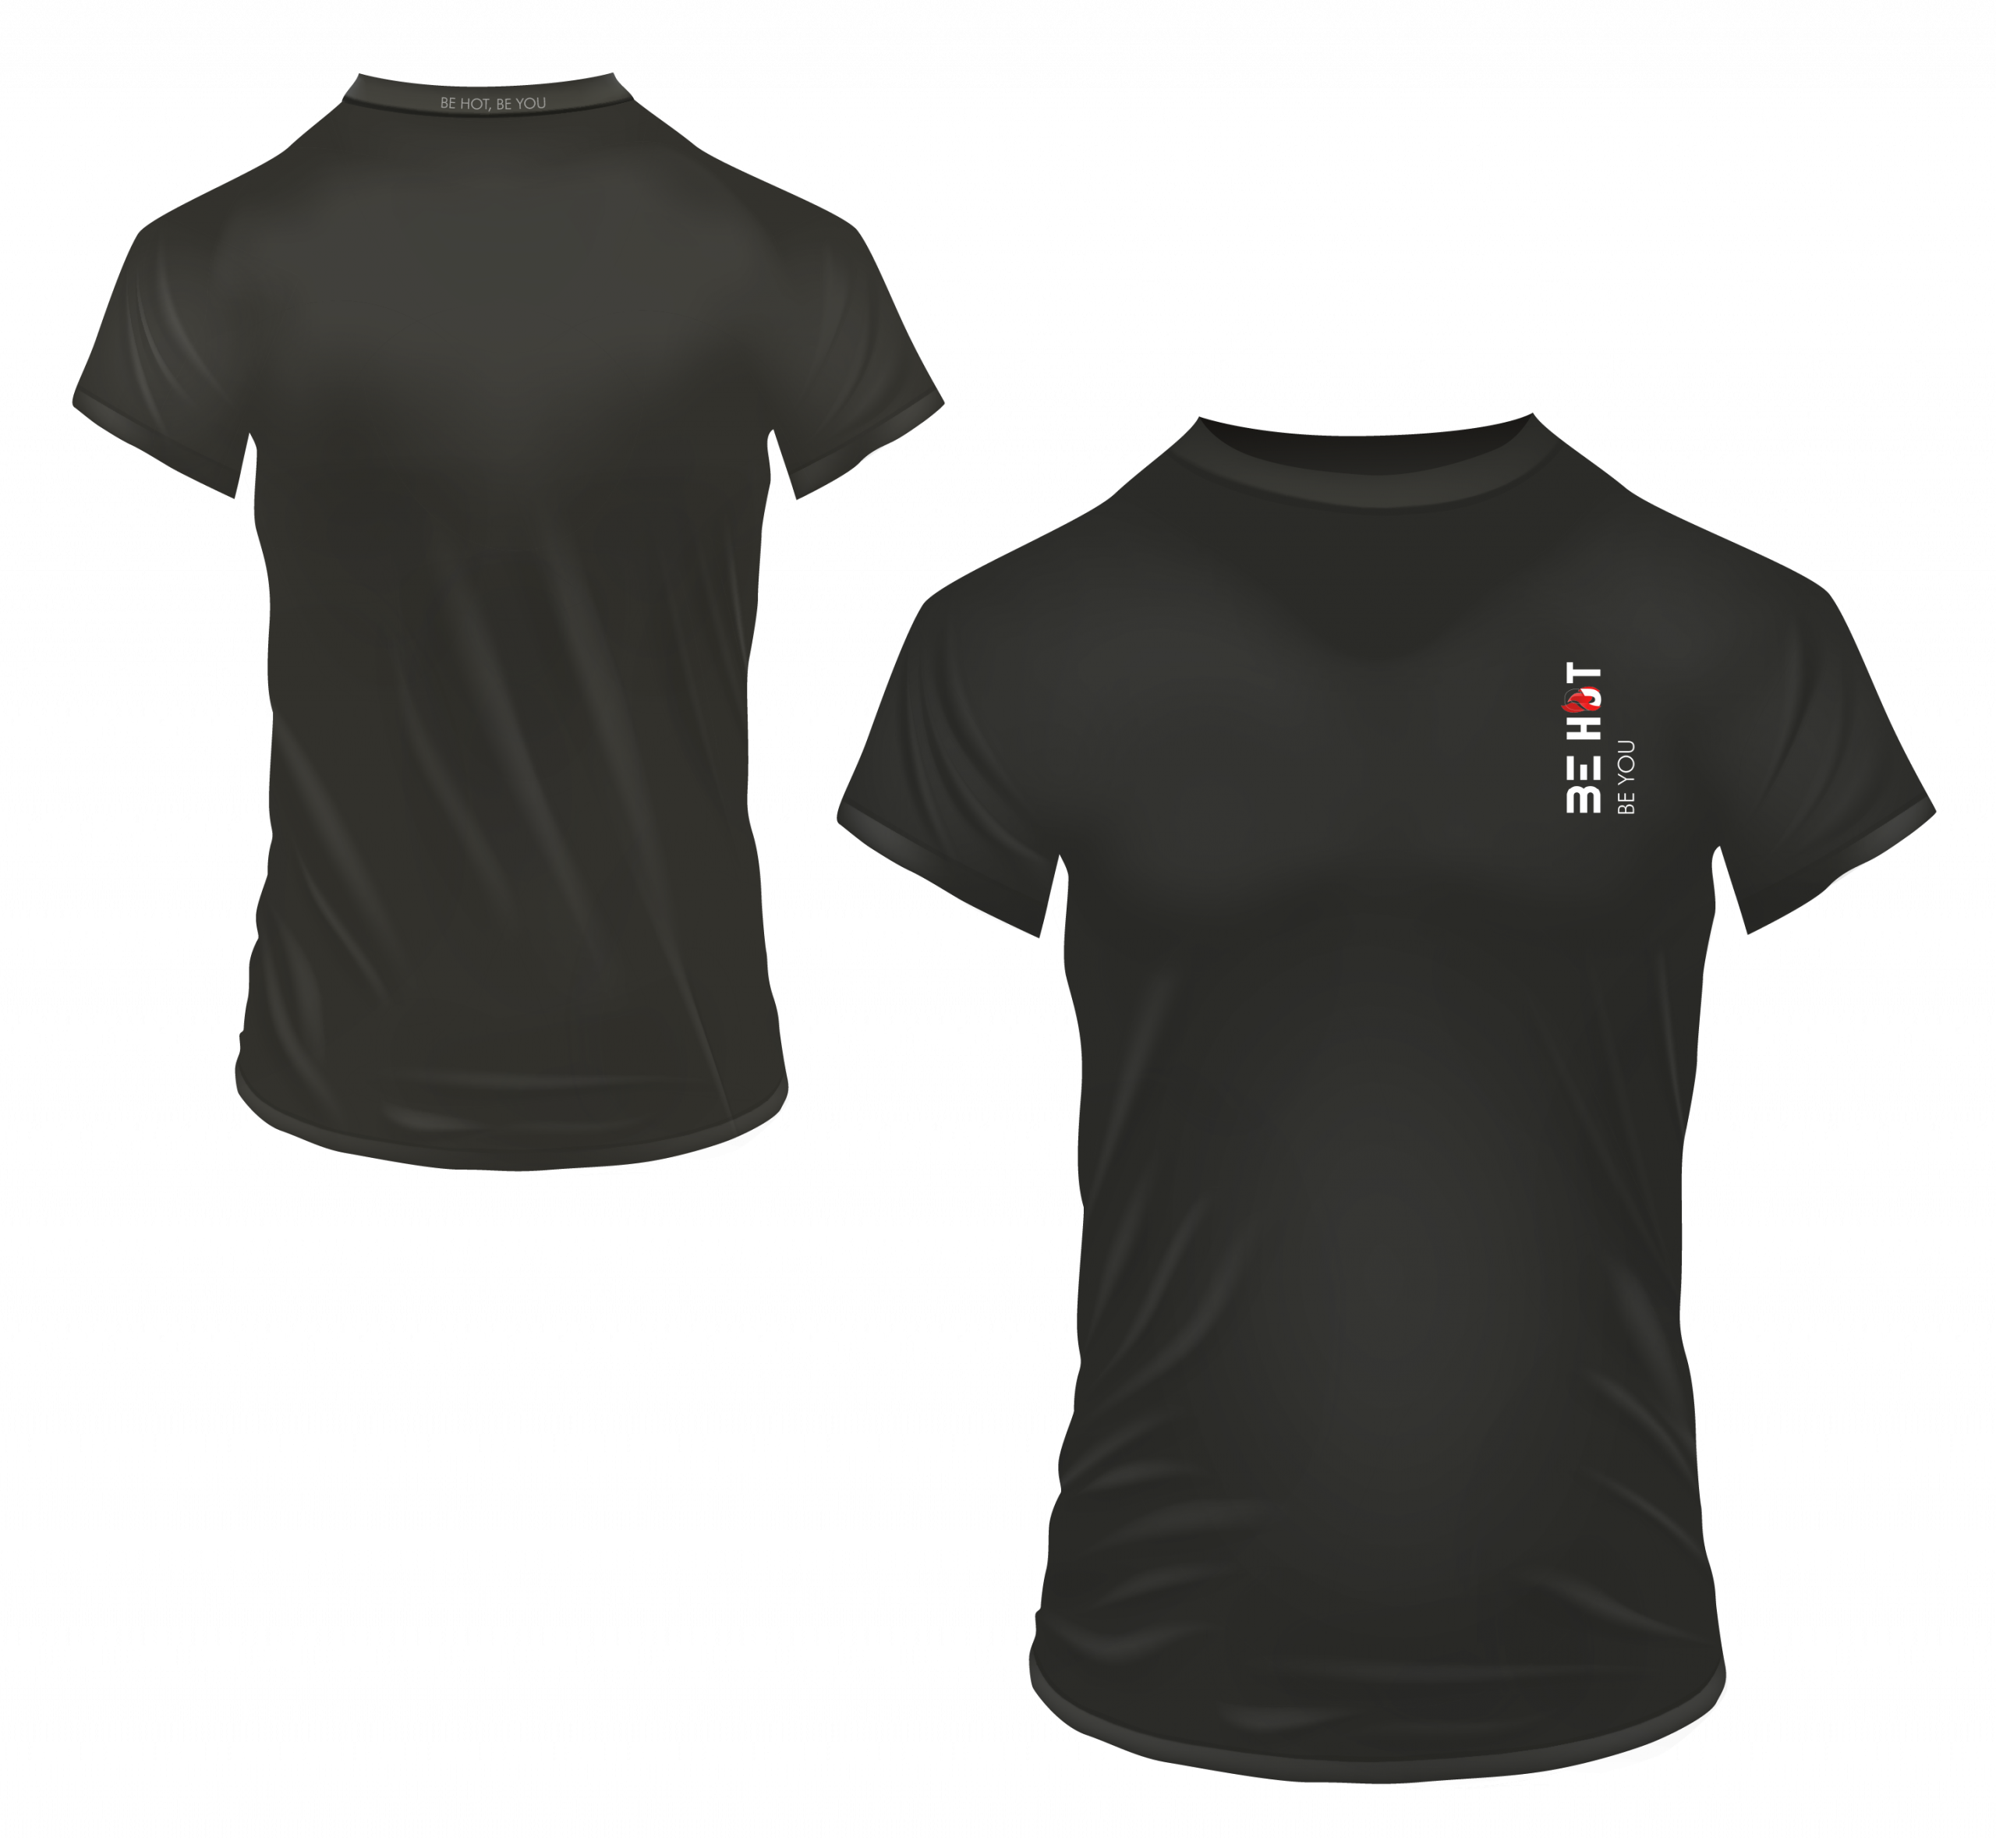 Notre t-shirt The FIT BLACKER de la marque BE HOT, qui est un t-shirt ajusté, en bambou de couleur noir.